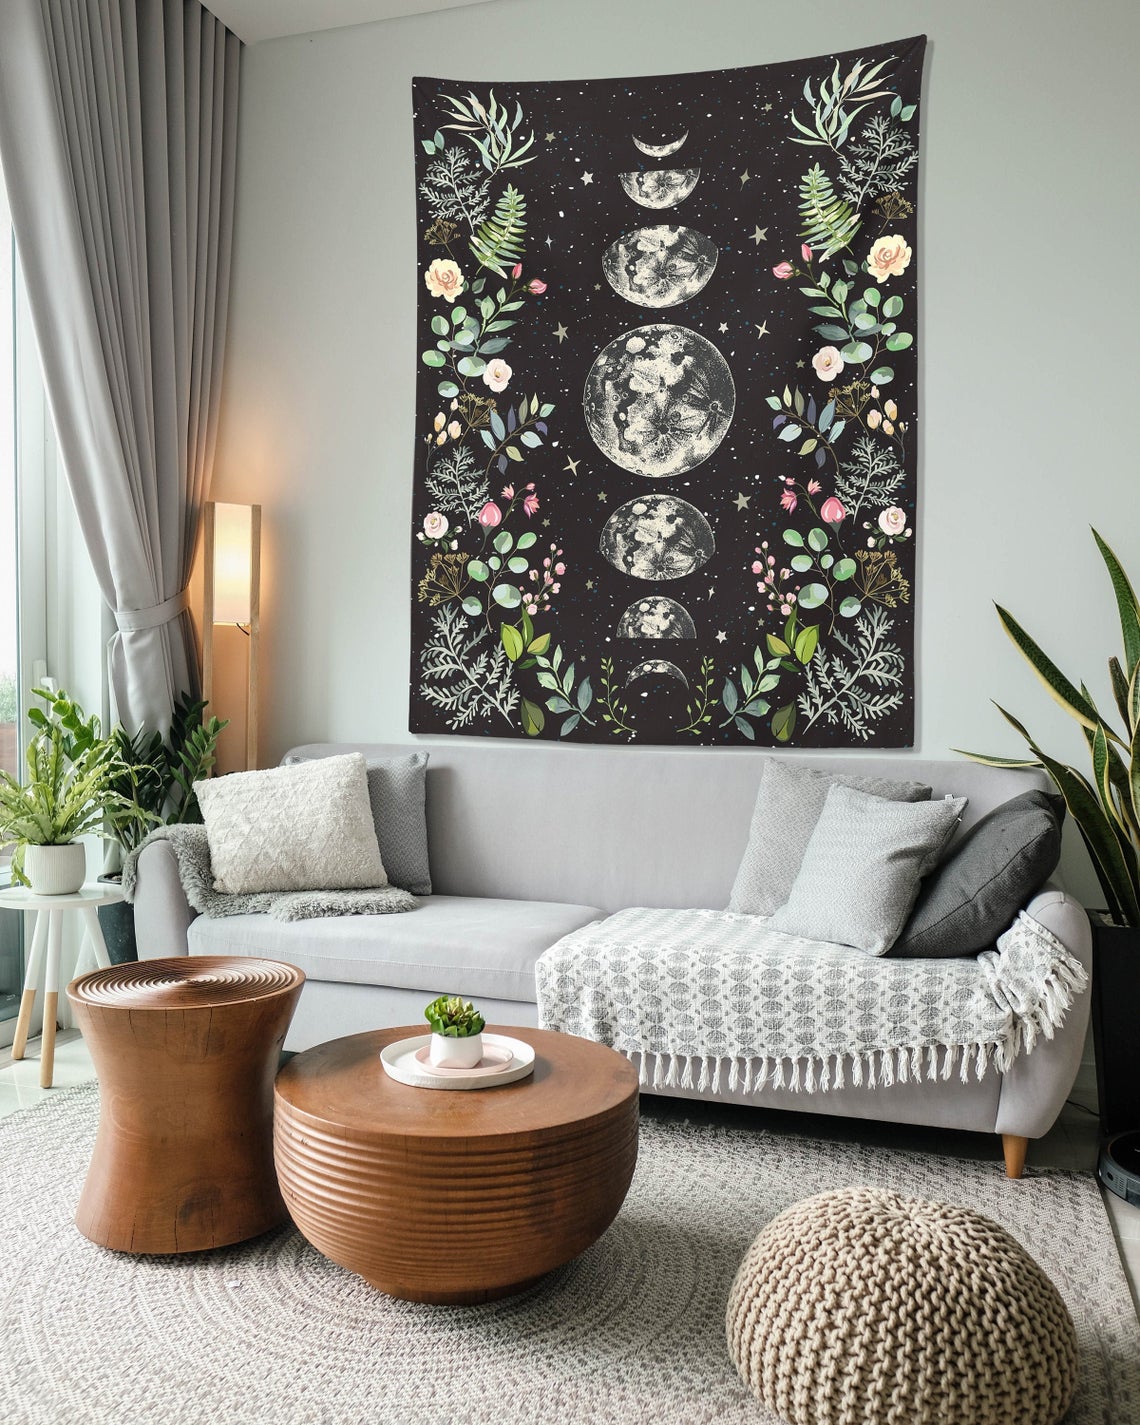 Moonlit Garden Tapestry